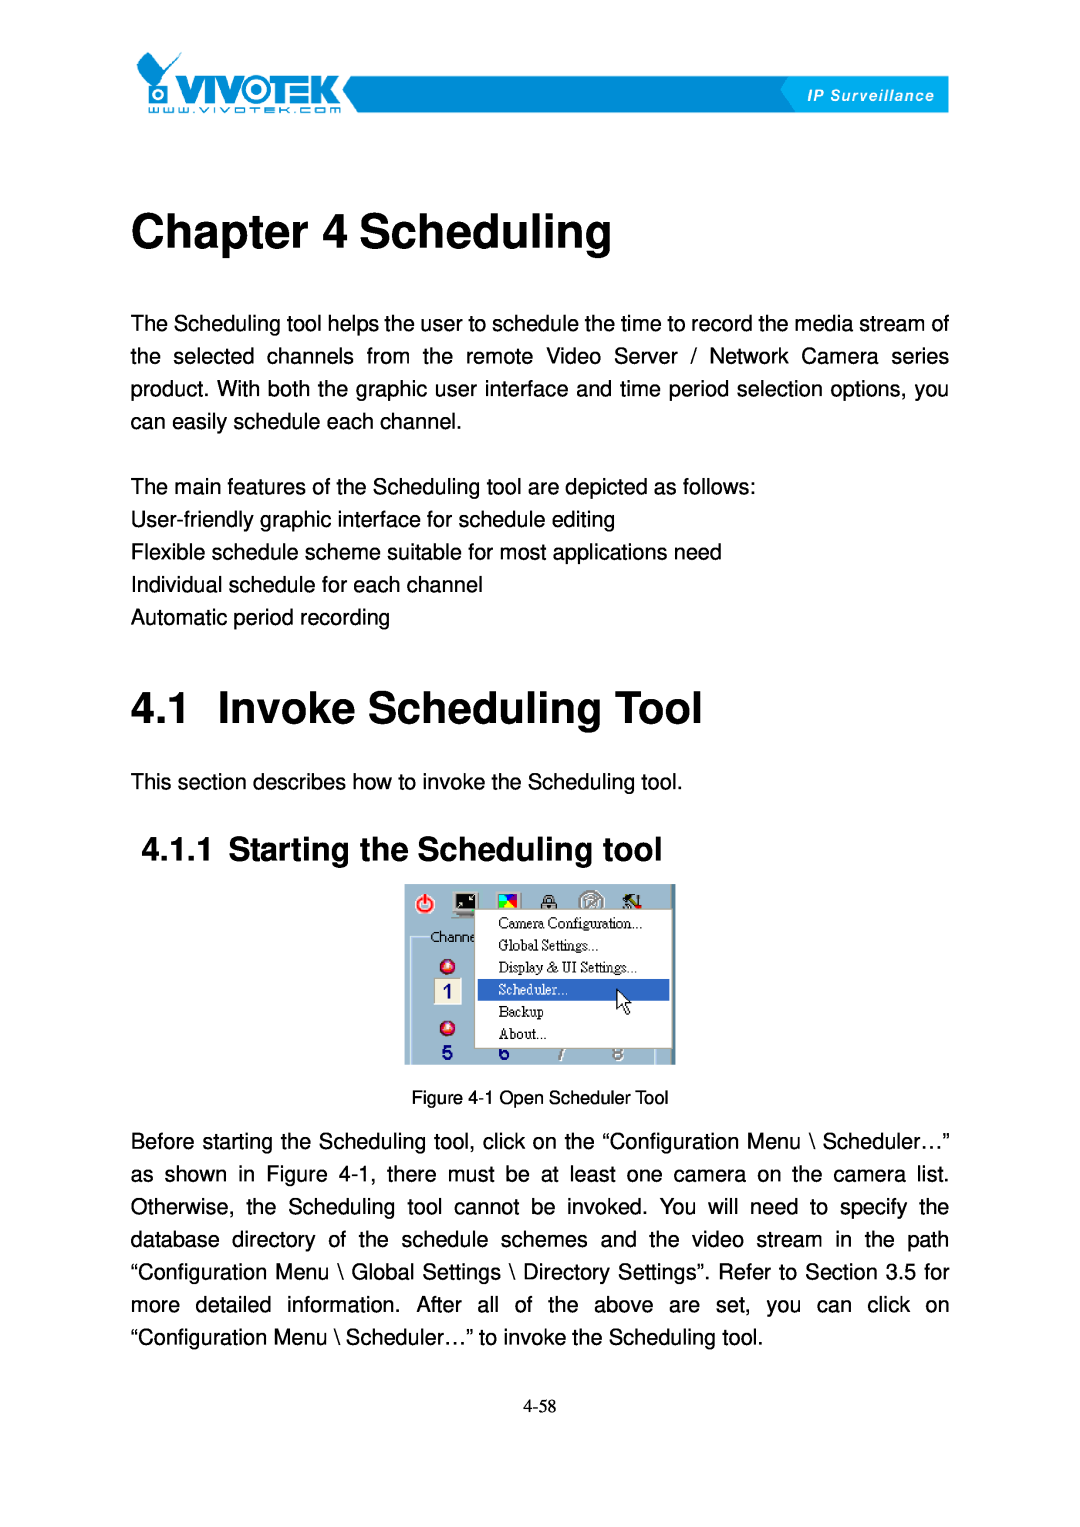 Vivotek ST3402 user manual Scheduling3B, Invoke17BScheduling Tool, Starting46Bthe Scheduling tool 